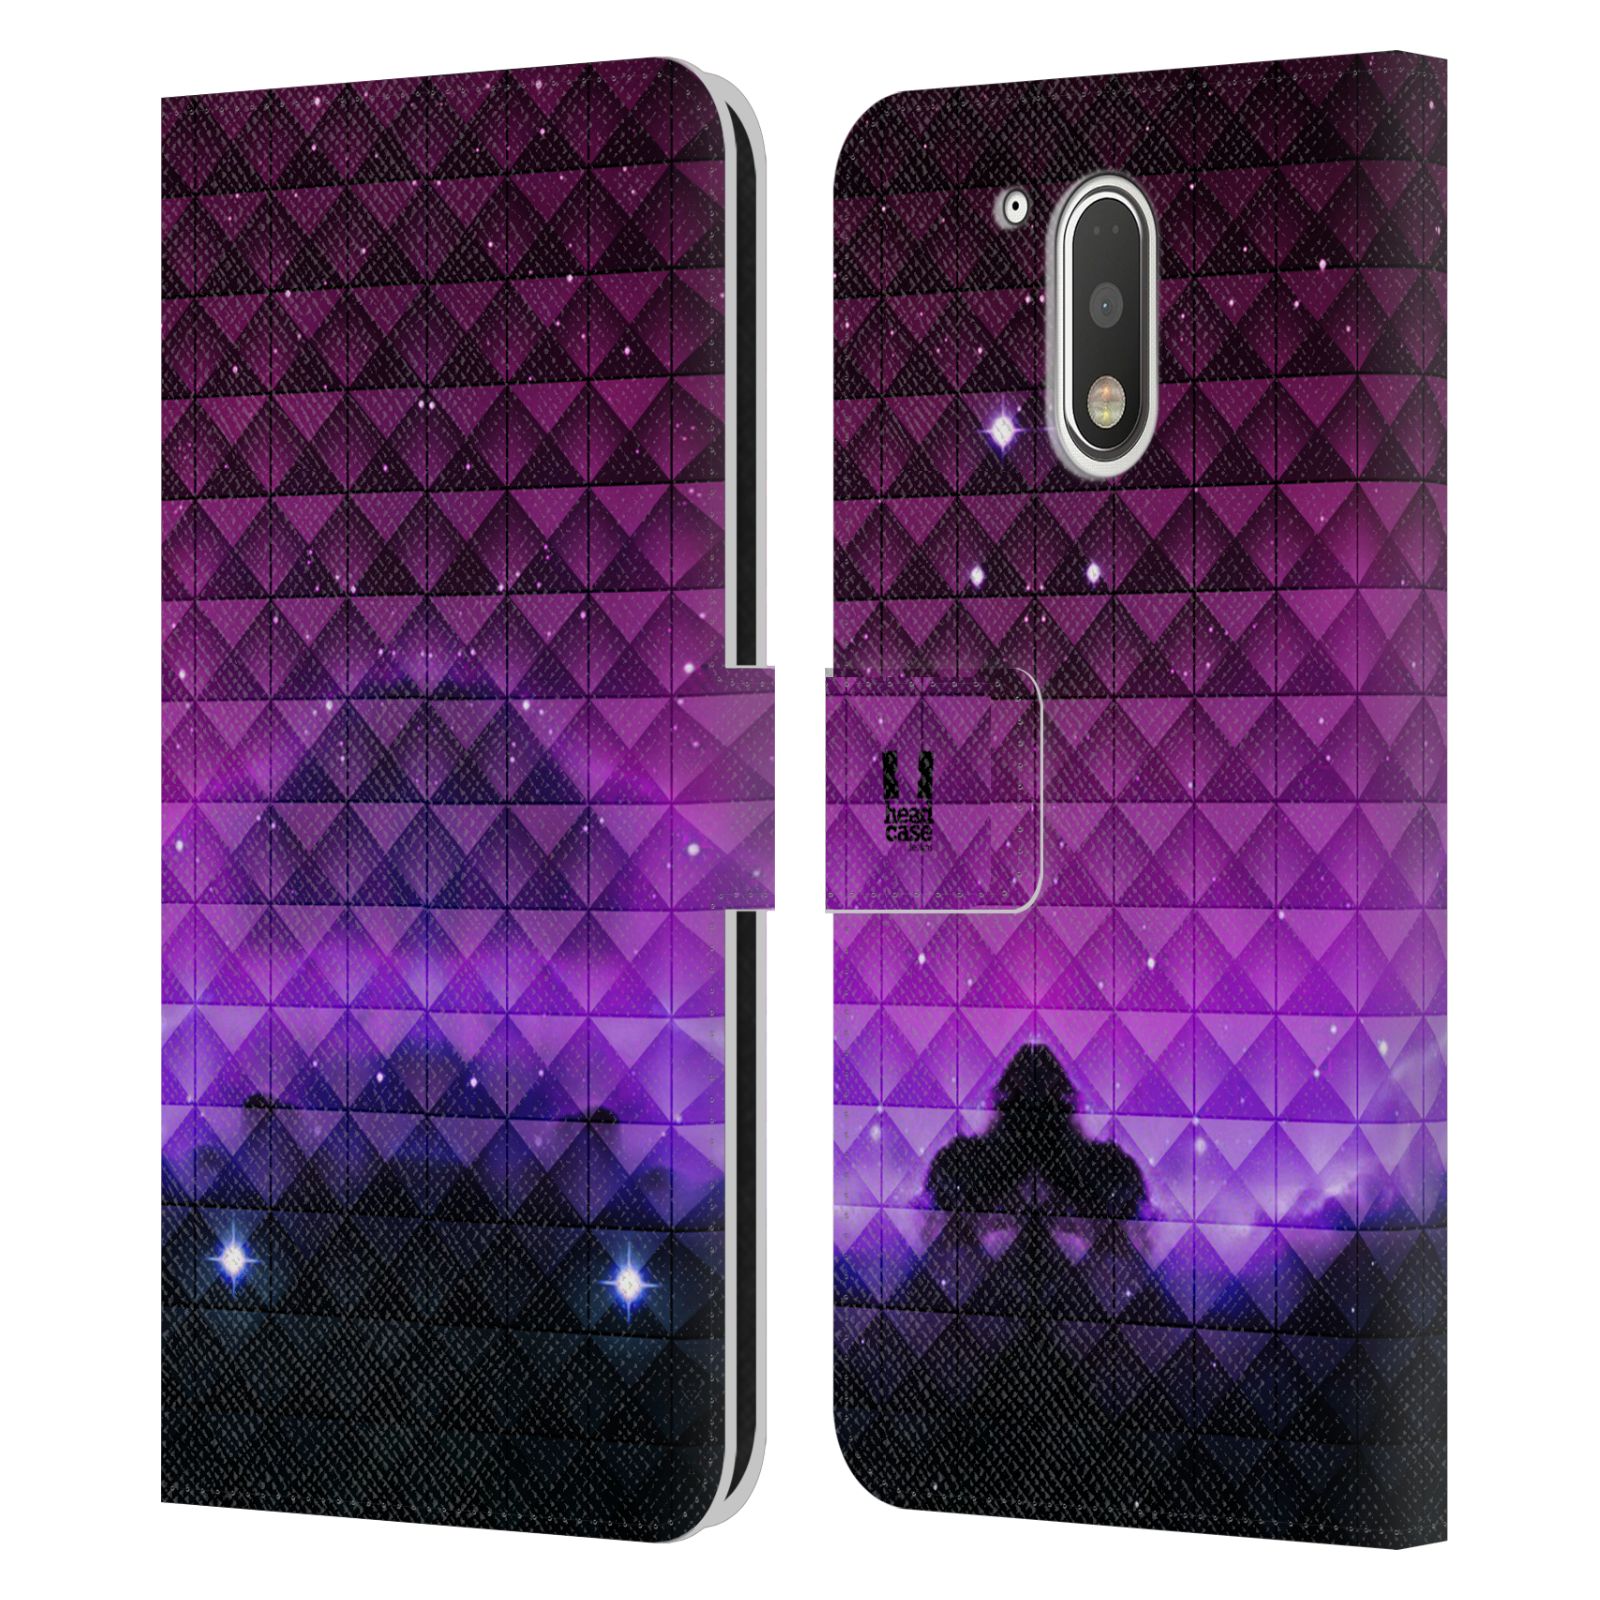 Pouzdro HEAD CASE na mobil Motorola Moto G41 barevná vesmírná mlhovina fialová a černá